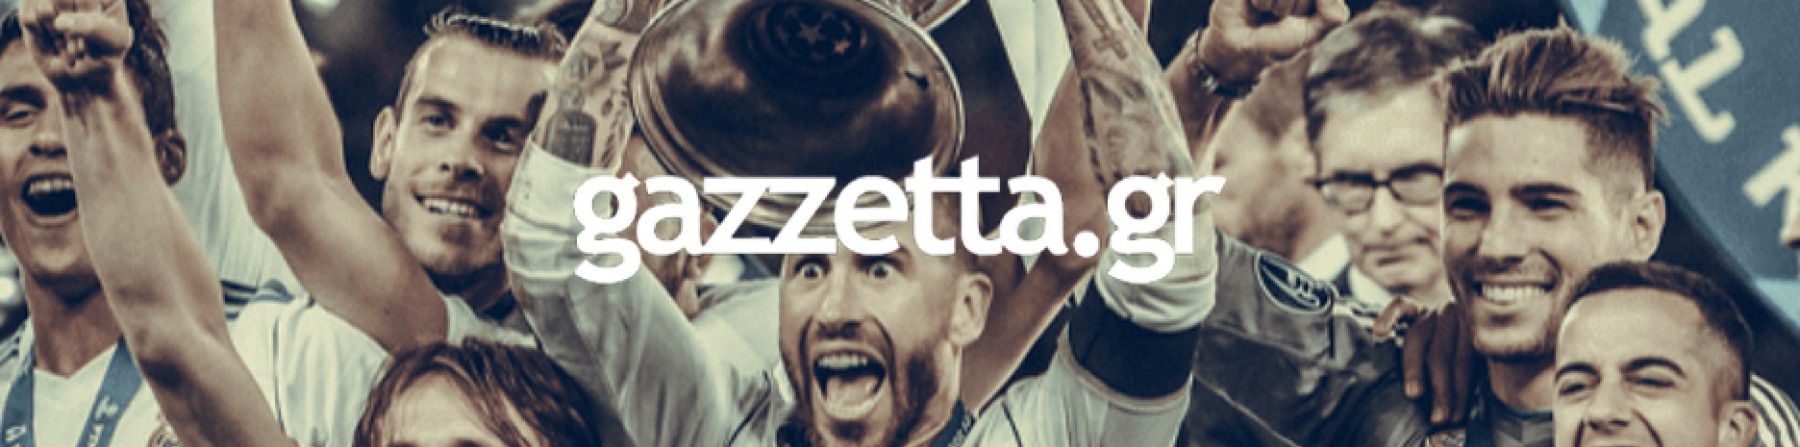 Gazzetta teaser